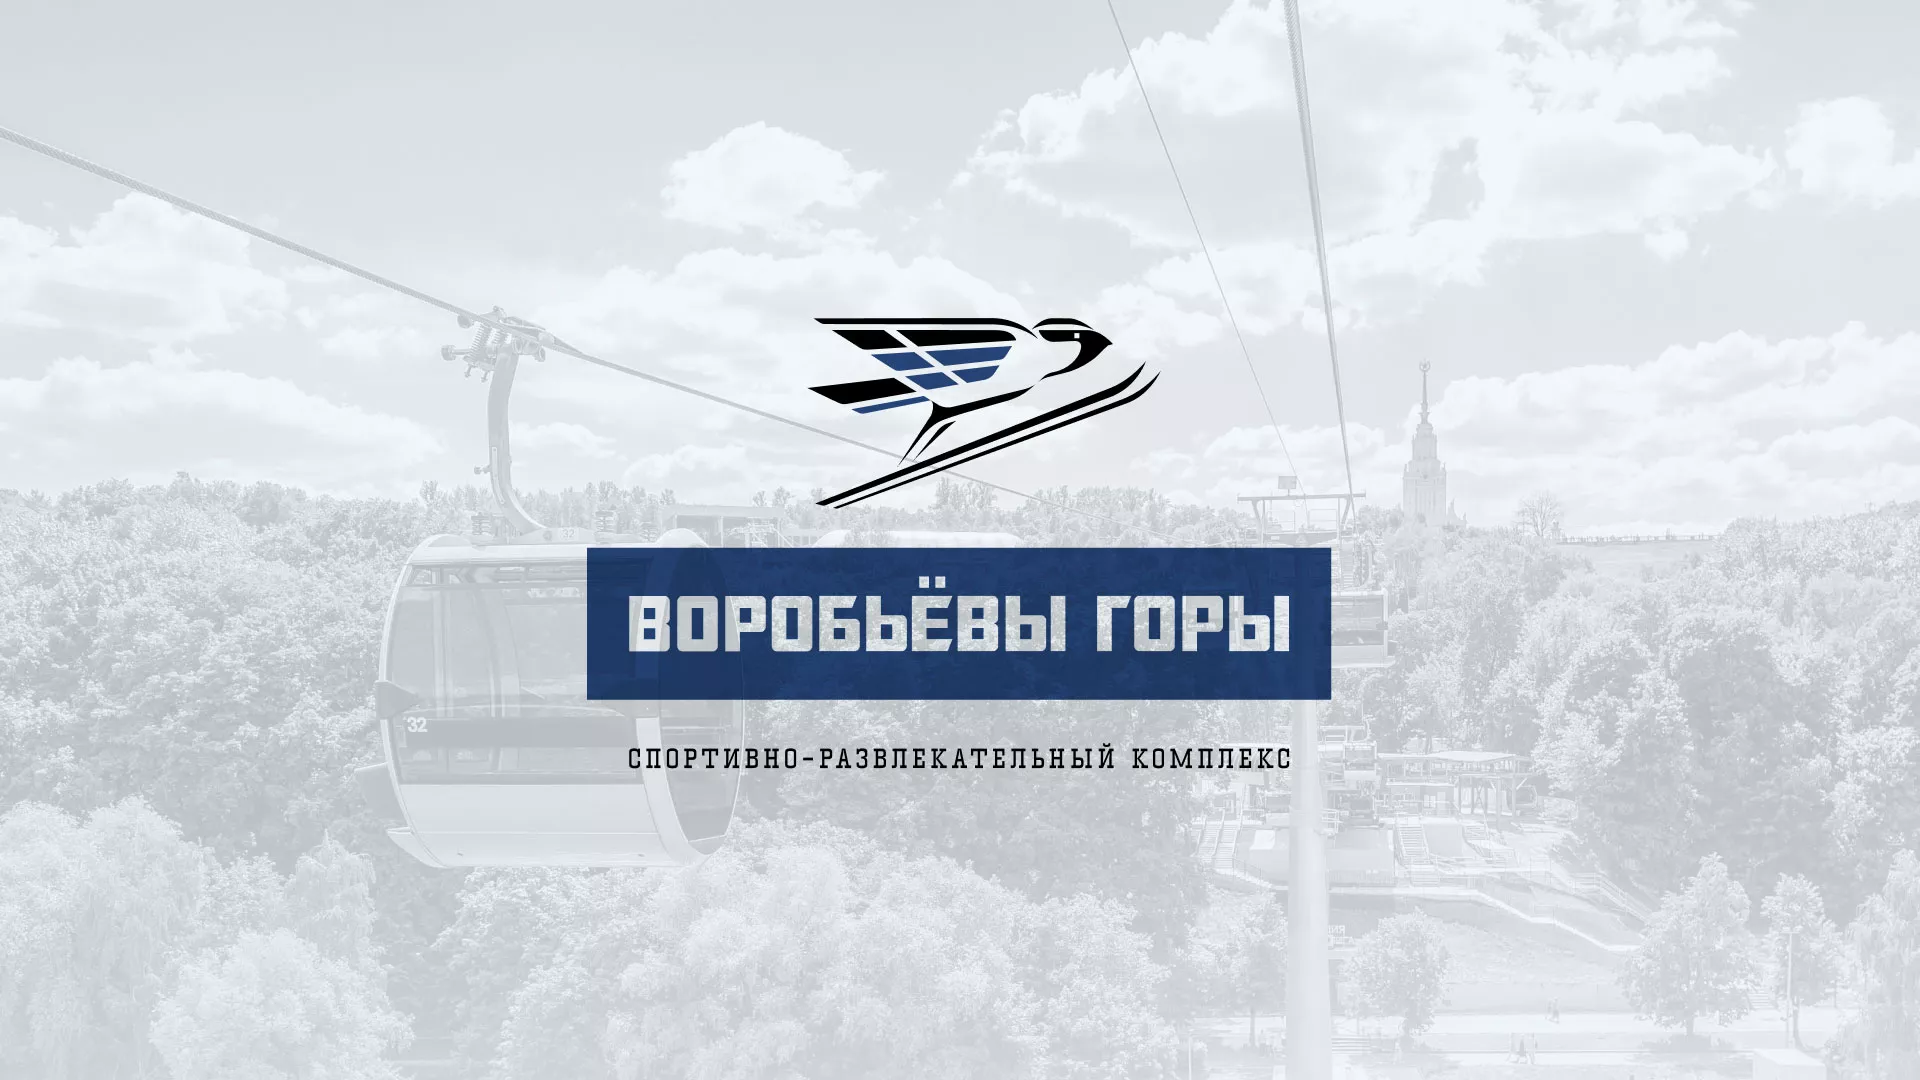 Разработка сайта в Зеленокумске для спортивно-развлекательного комплекса «Воробьёвы горы»